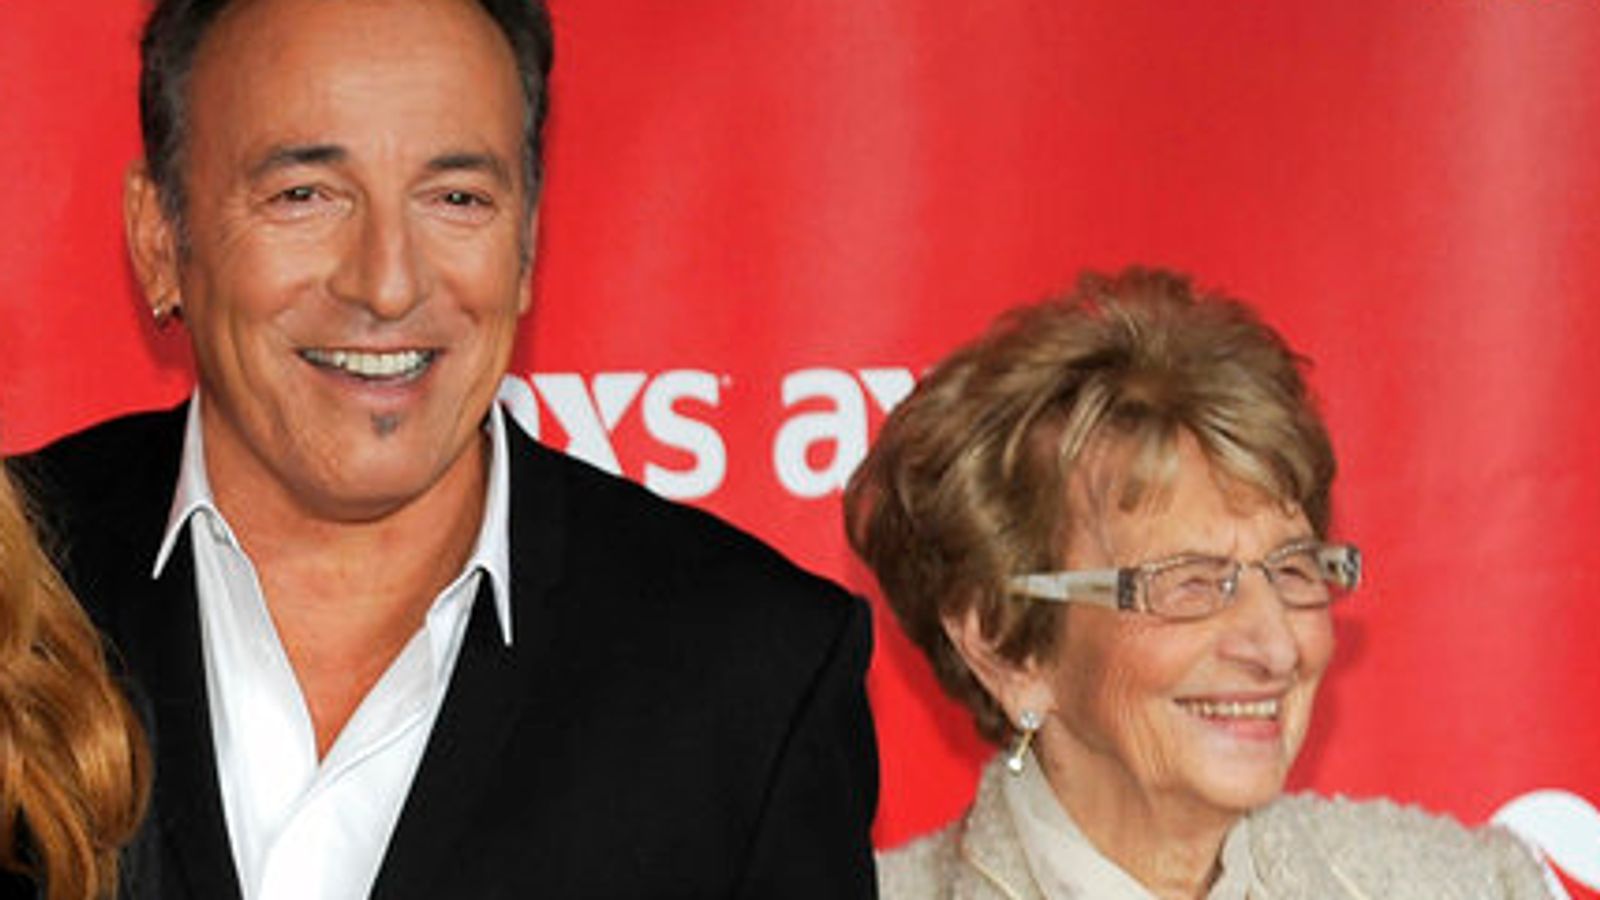 Bruce Springsteen publie un hommage émouvant en annonçant le décès de sa mère Adele |  Arts et actualité artistique